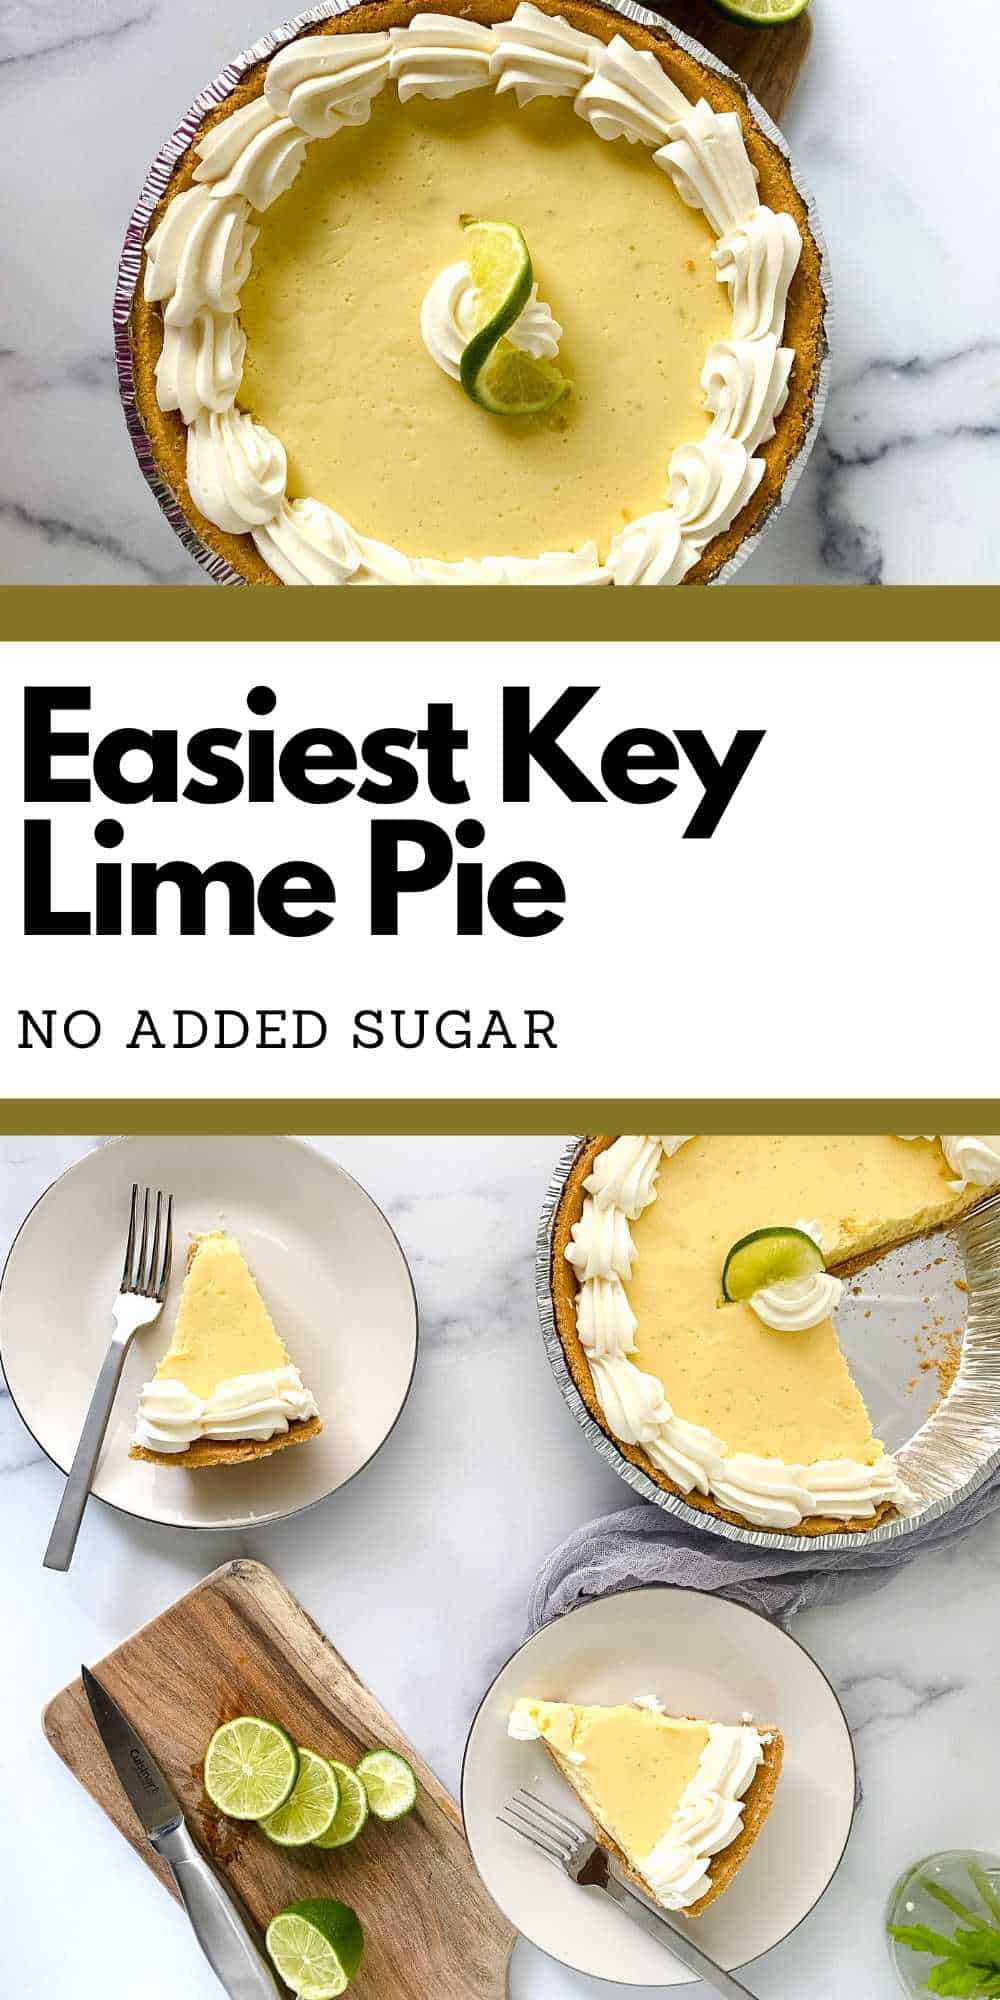 Easy Sugar Free Key Lime Pie